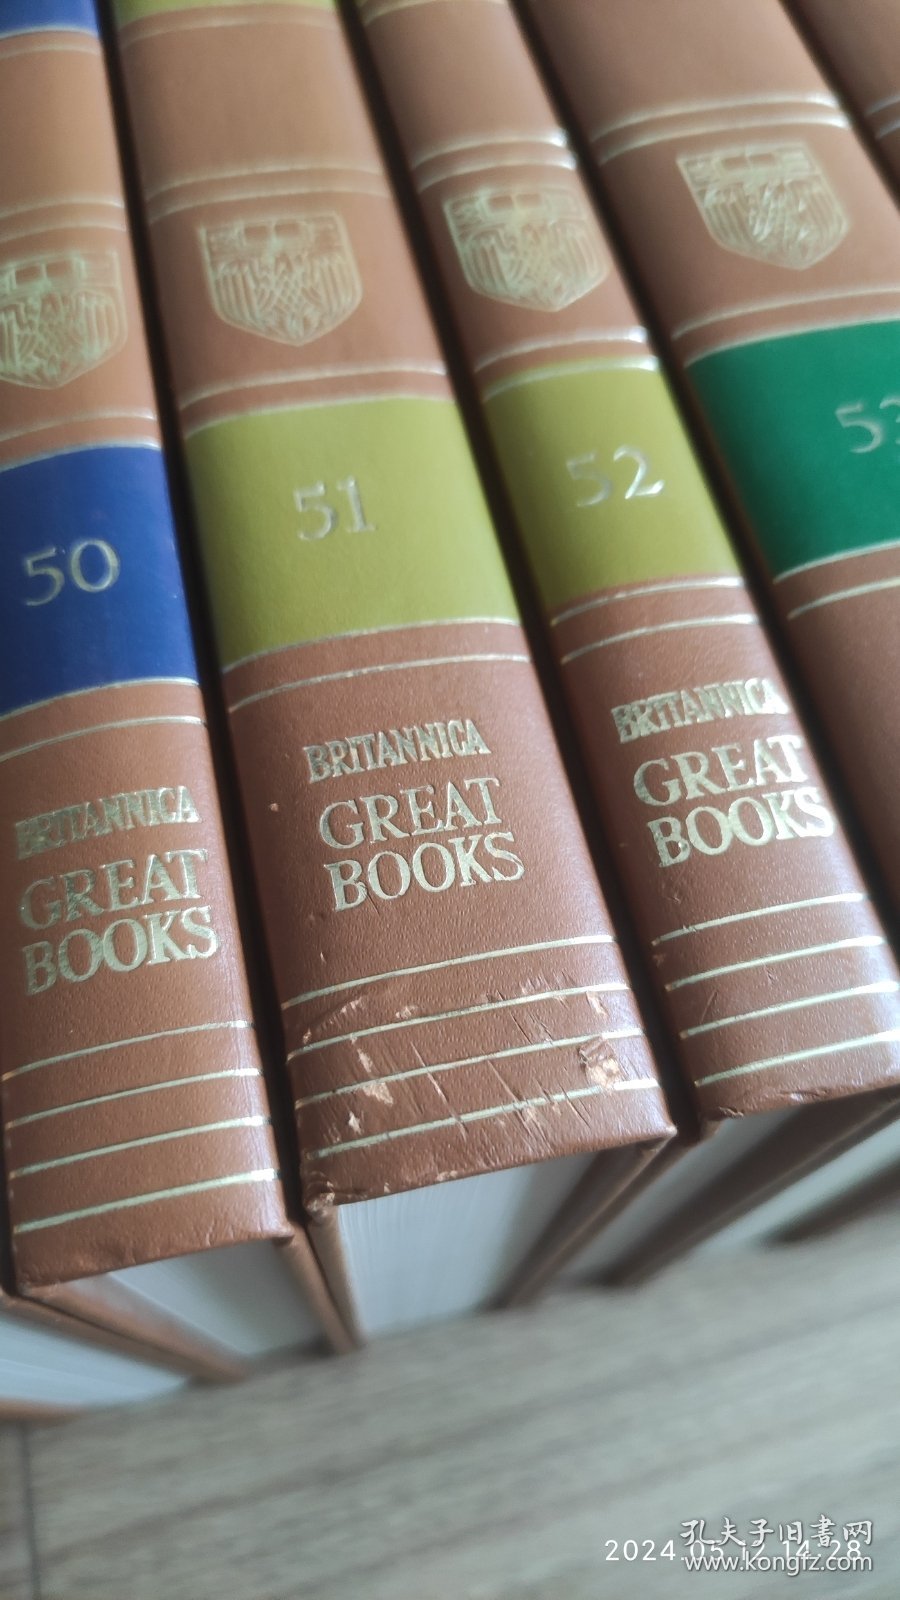 西方世界的伟大著作 (第一版) 全套54册 Great Books Of The Western World by Encyclopedia Britannica 精装本